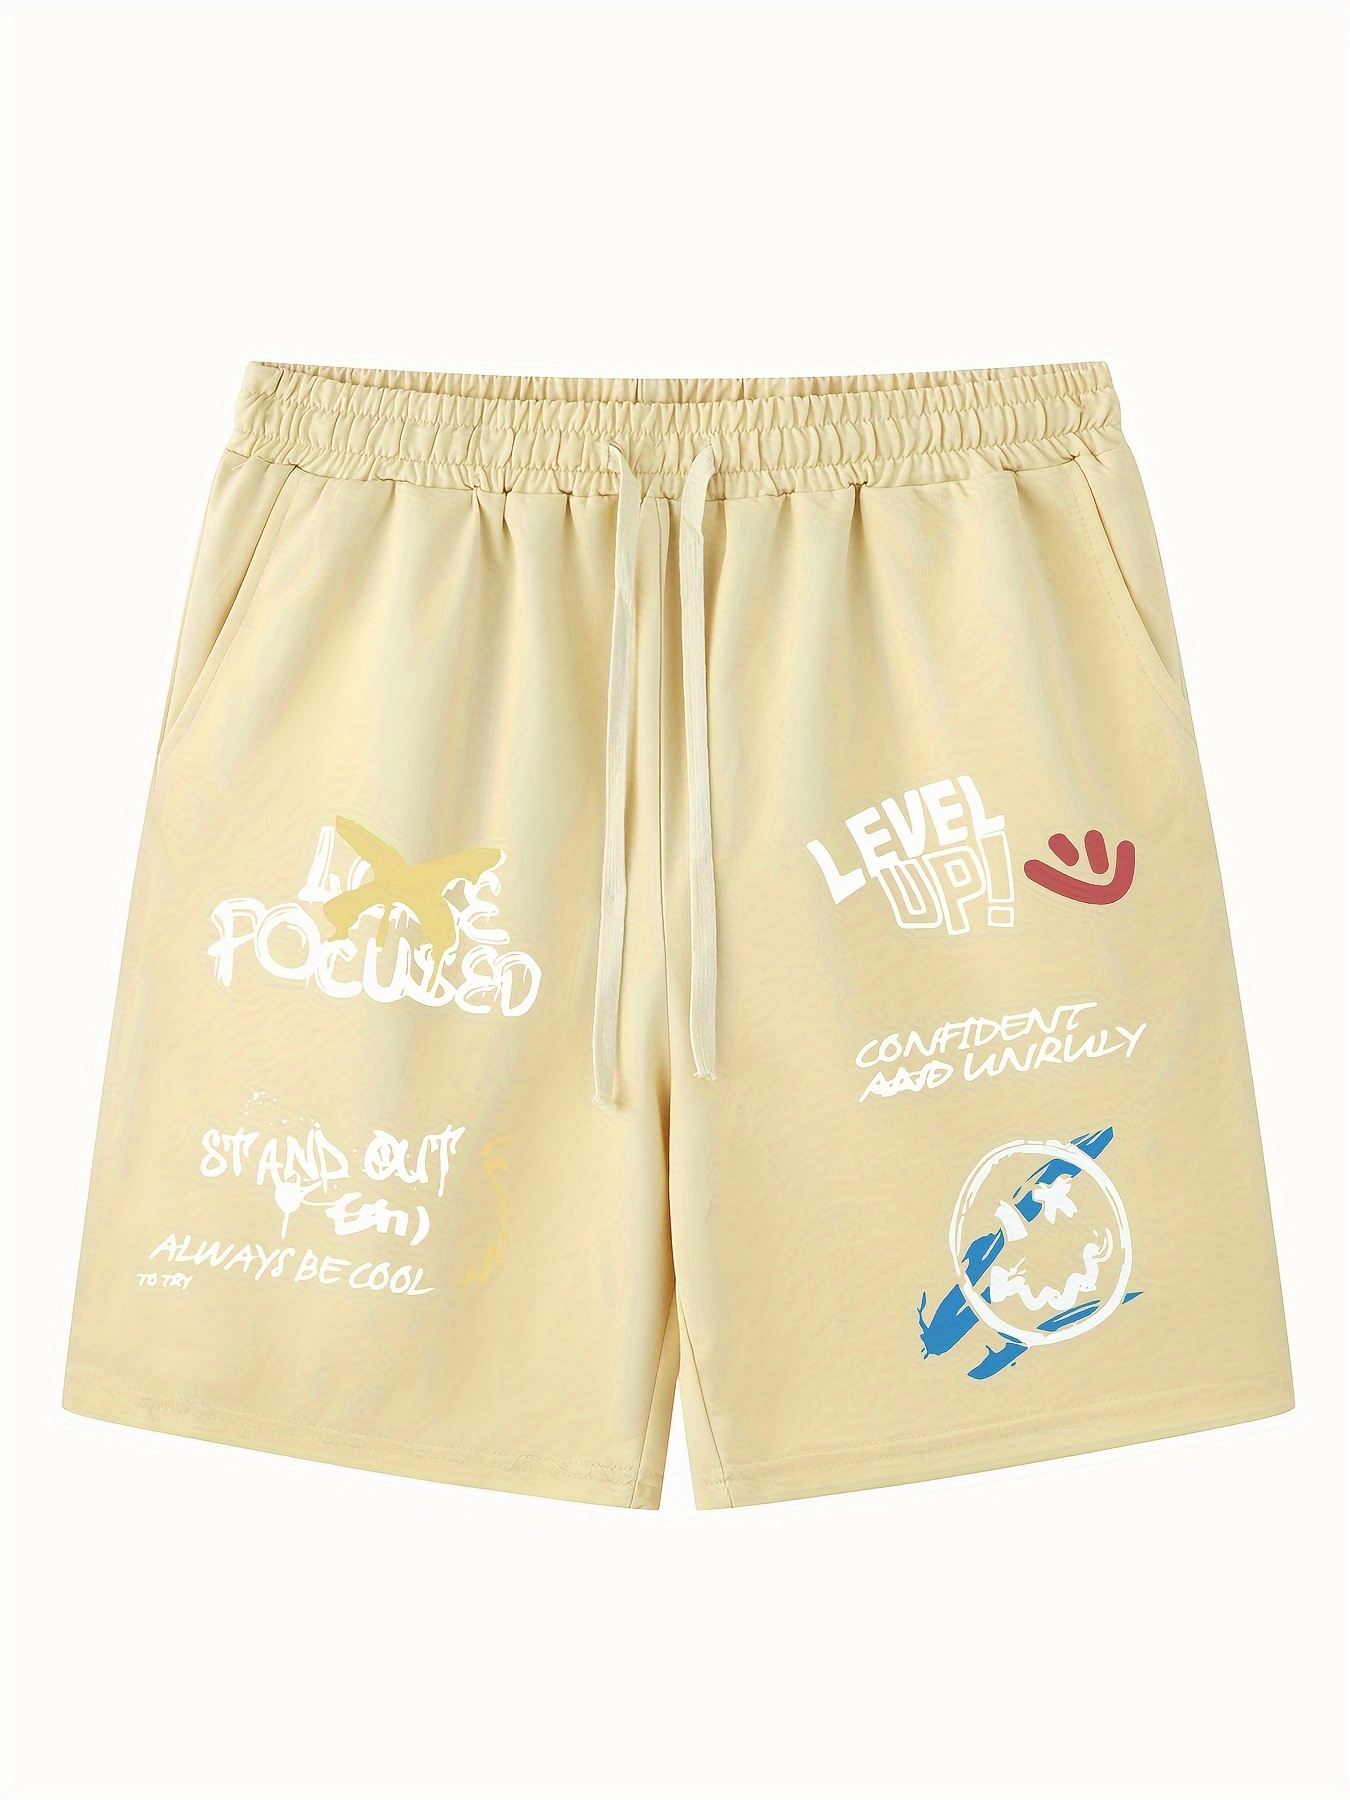 Pantalones cortos deportivos informales con cordón y estampado de letras divertidas para Hombre, adecuados para Deportes al aire libre, cómodos y